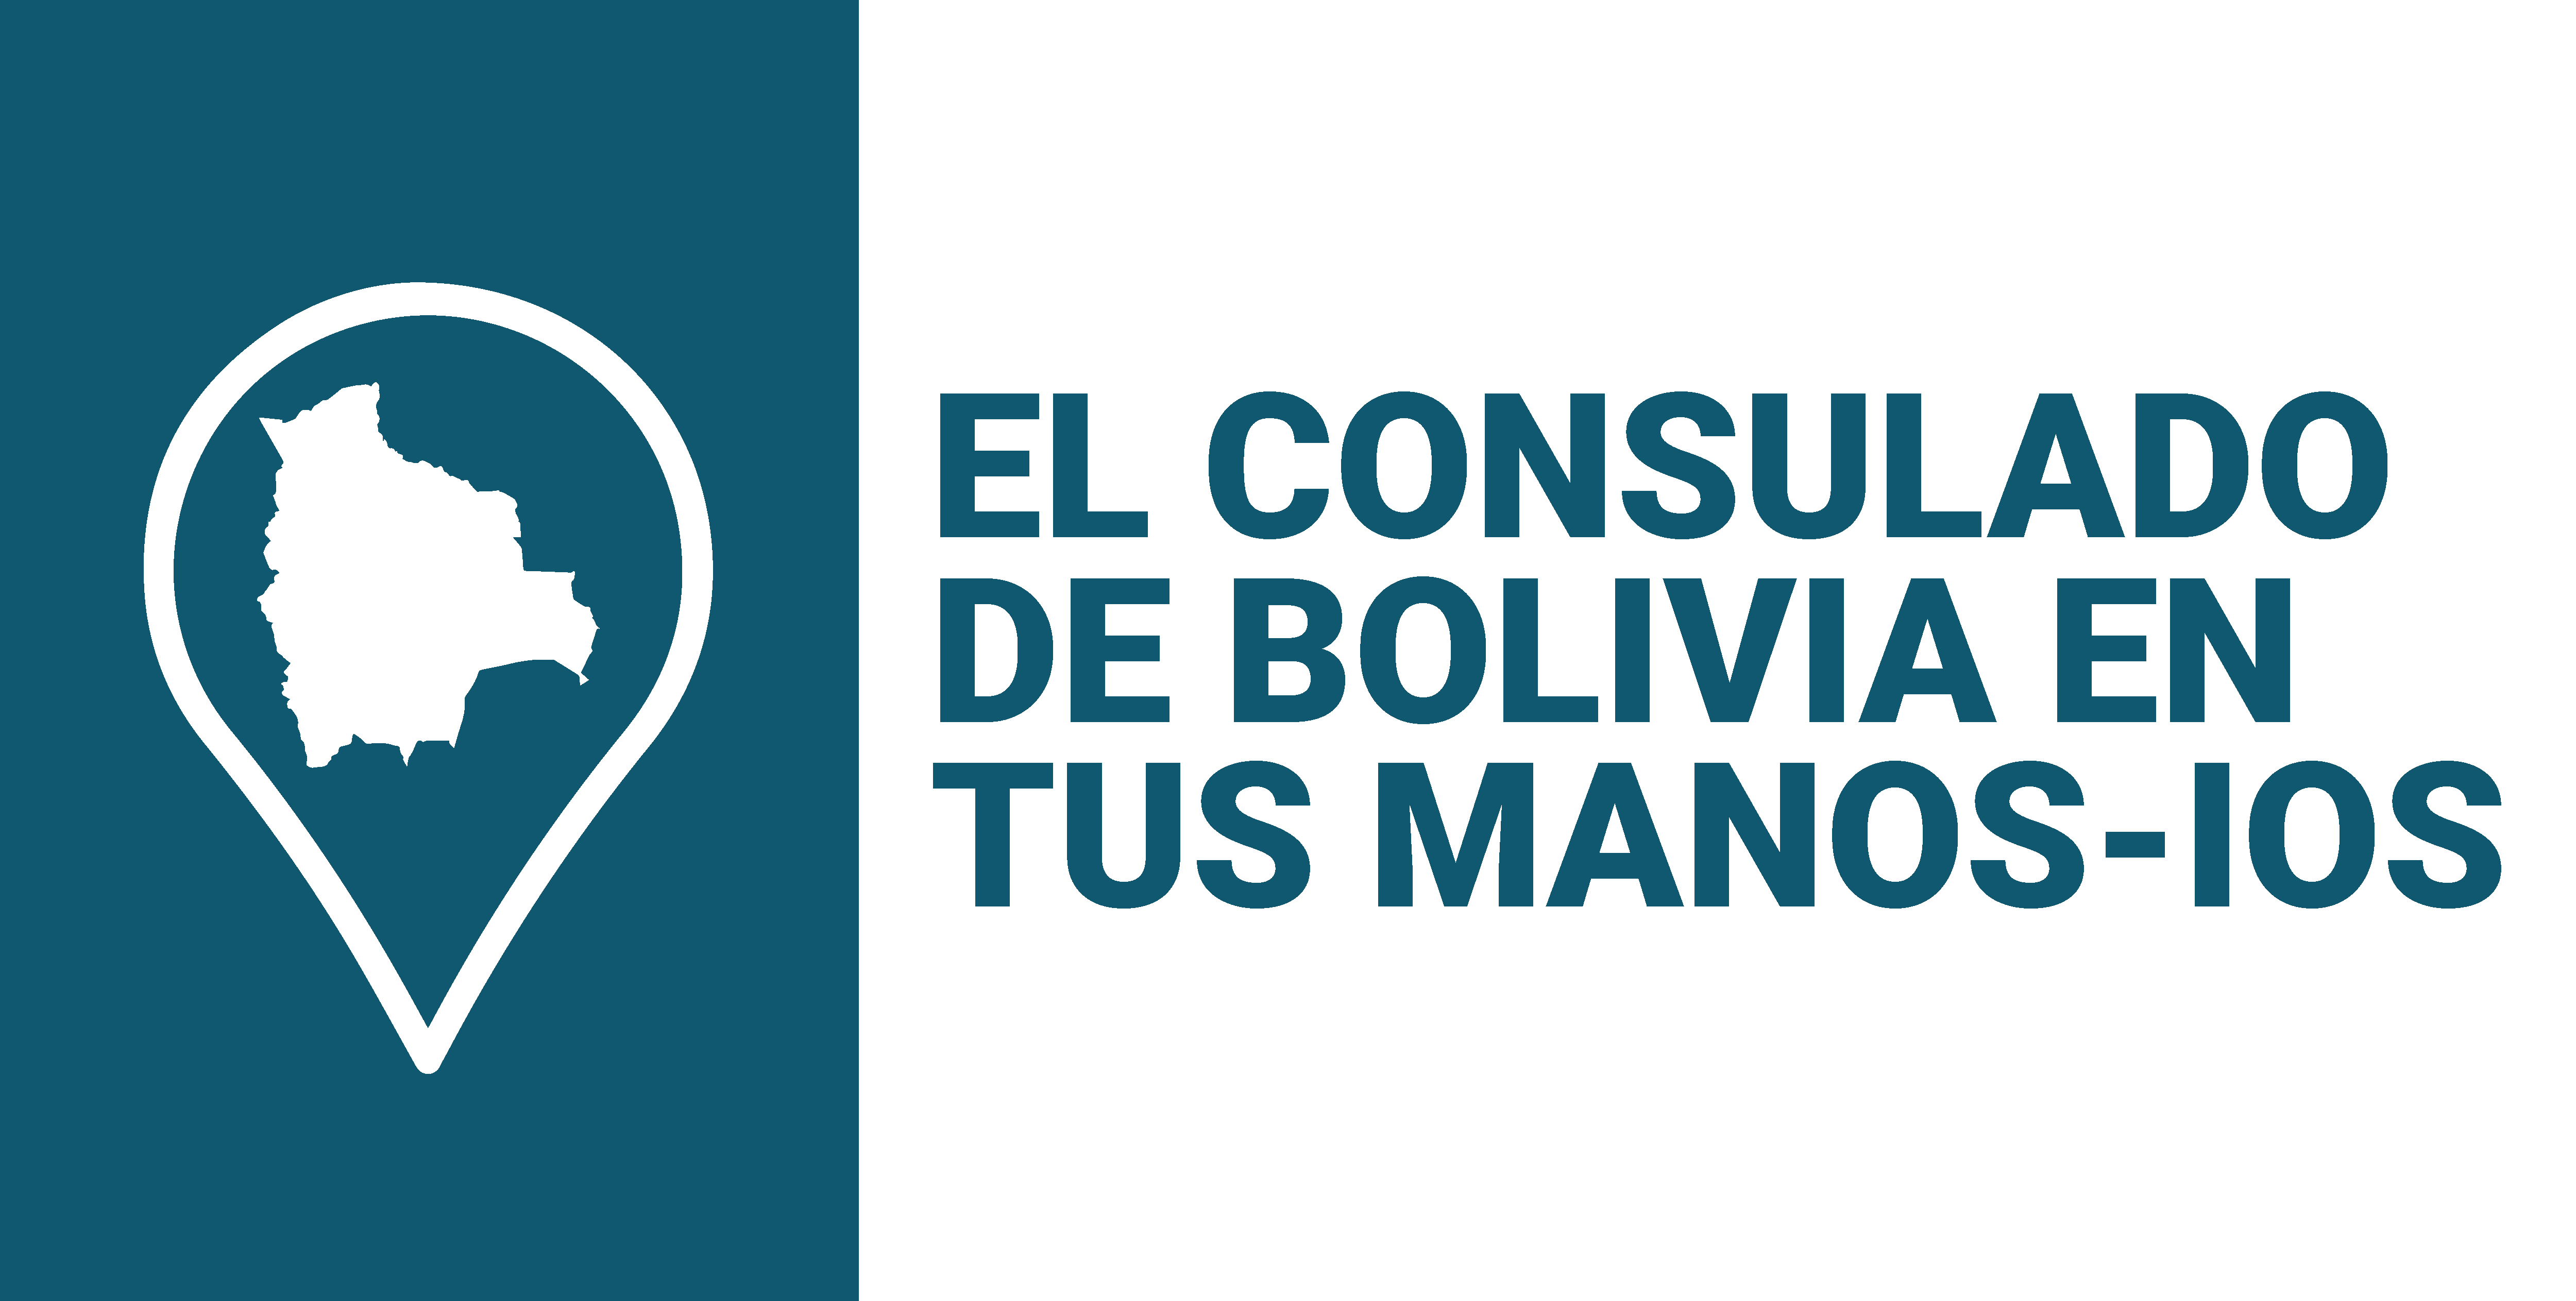 El consulado de Bolivia en tus manos - iOS